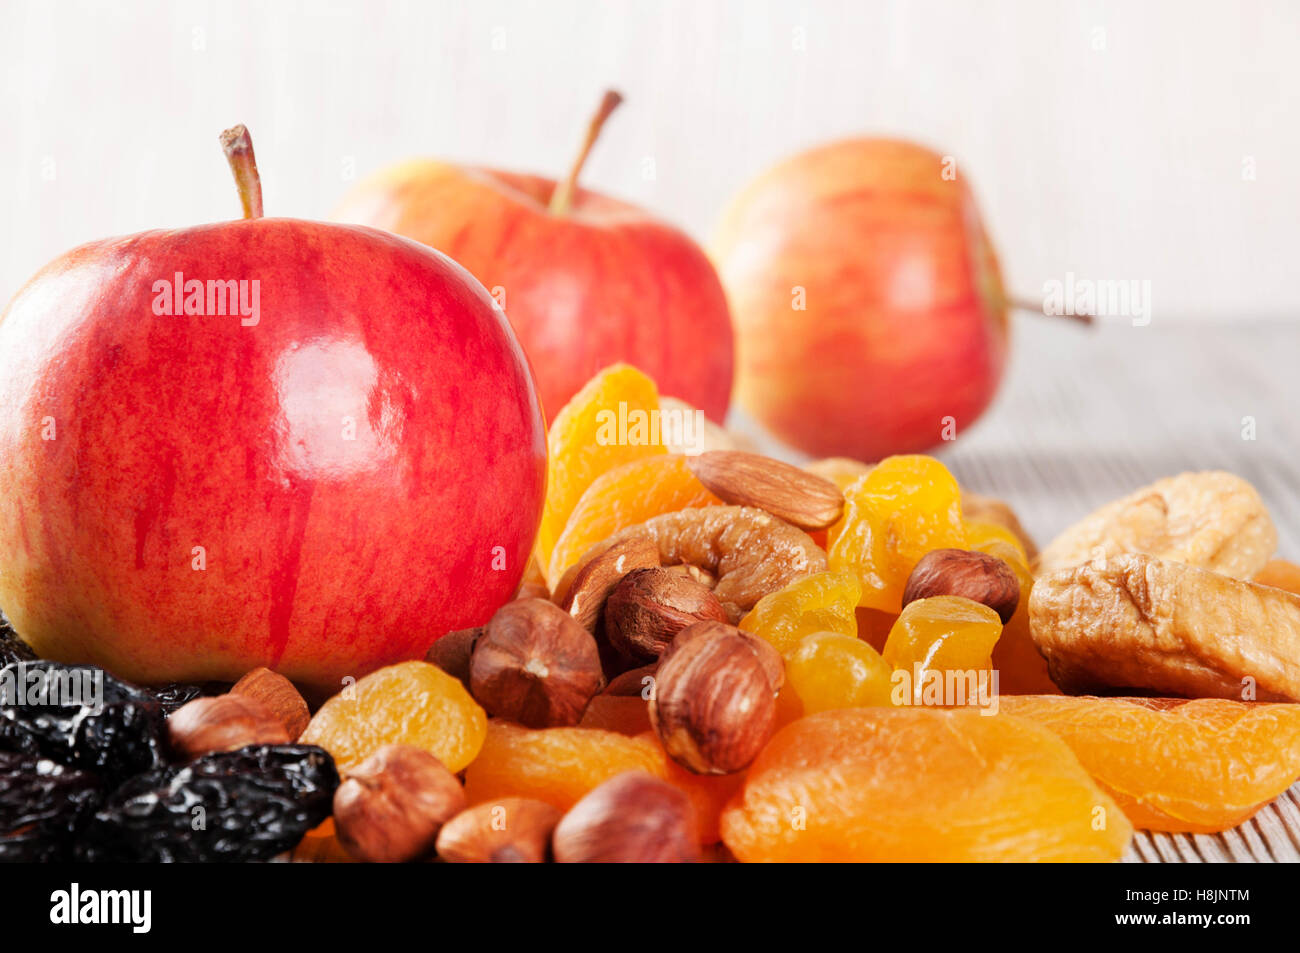 Reife rote Äpfel auf einem hölzernen Hintergrund. Saftige Äpfel, Nüssen und getrockneten Früchten auf einem Tisch. Stockfoto